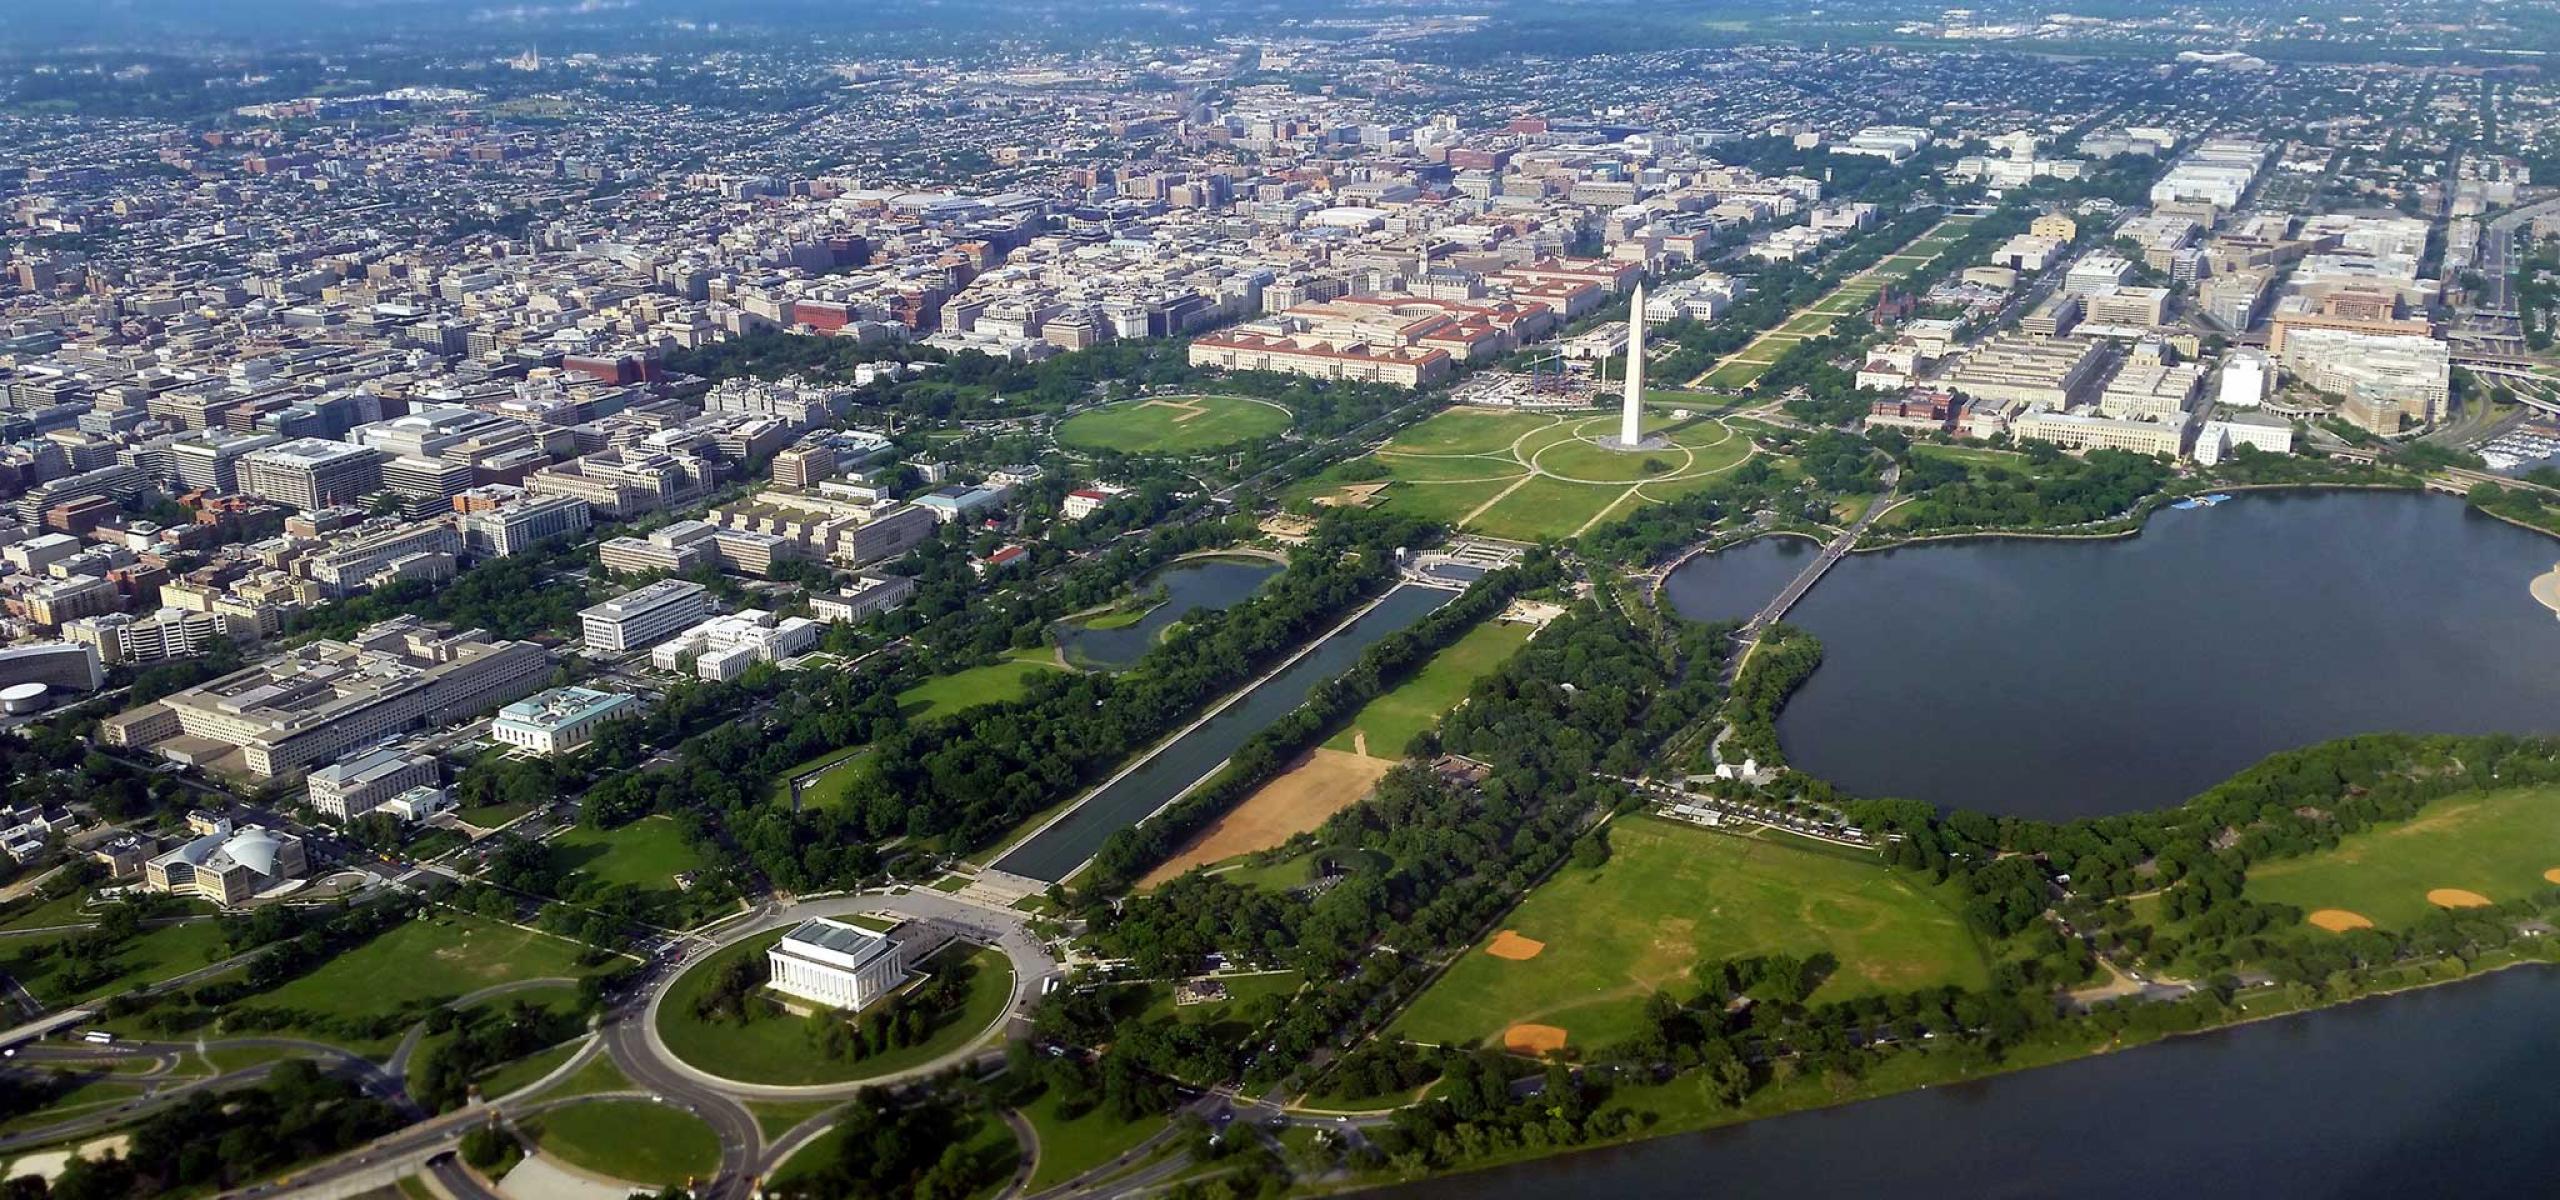 Washington, D.C. aerial view